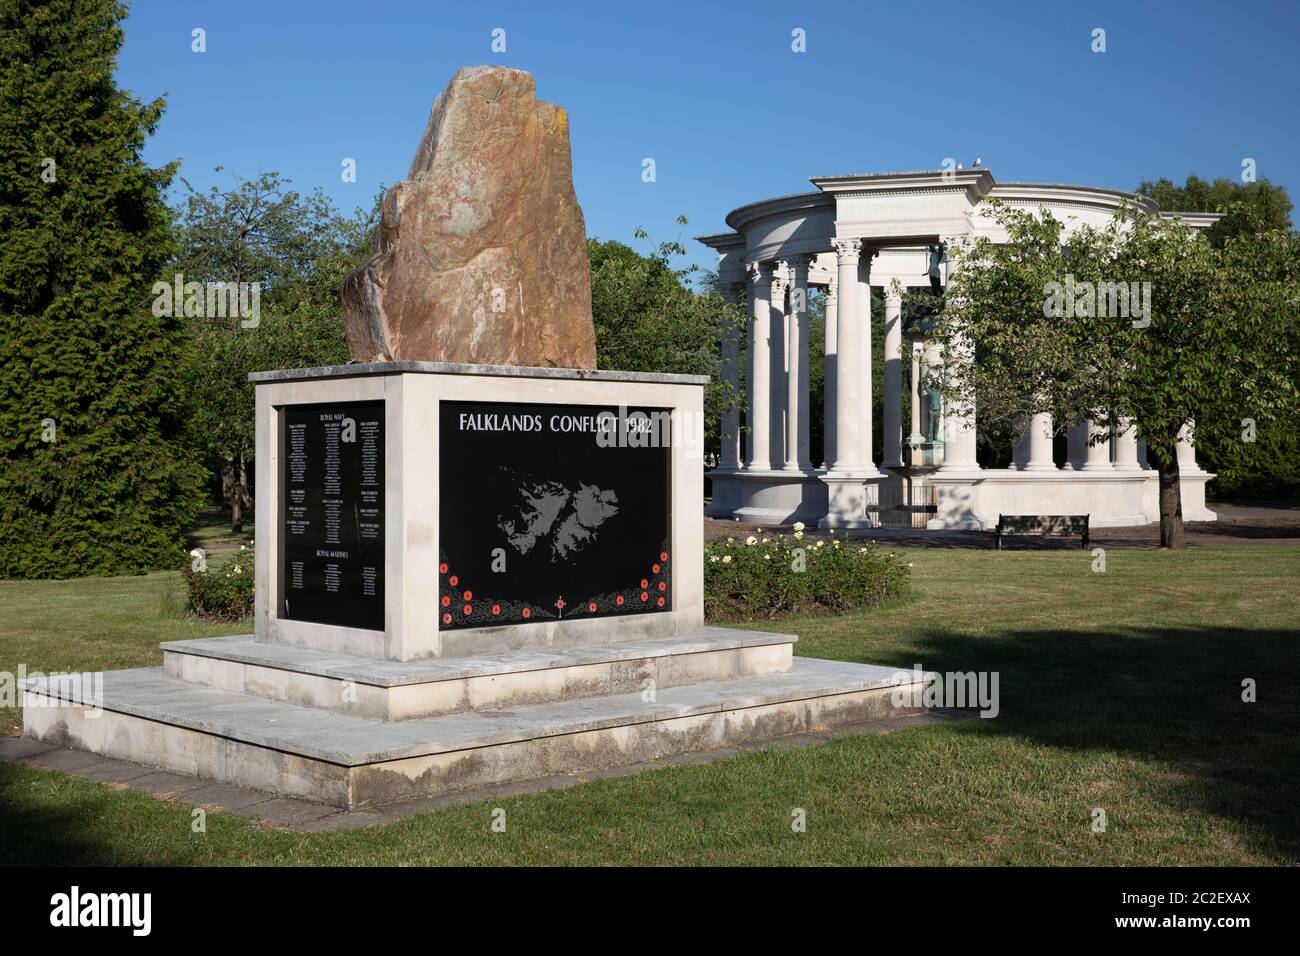 Le Welsh National War Memorial et le Falklands Memorial à Alexandra Gardens, Cathays Park, Cardiff, pays de Galles, Royaume-Uni Banque D'Images